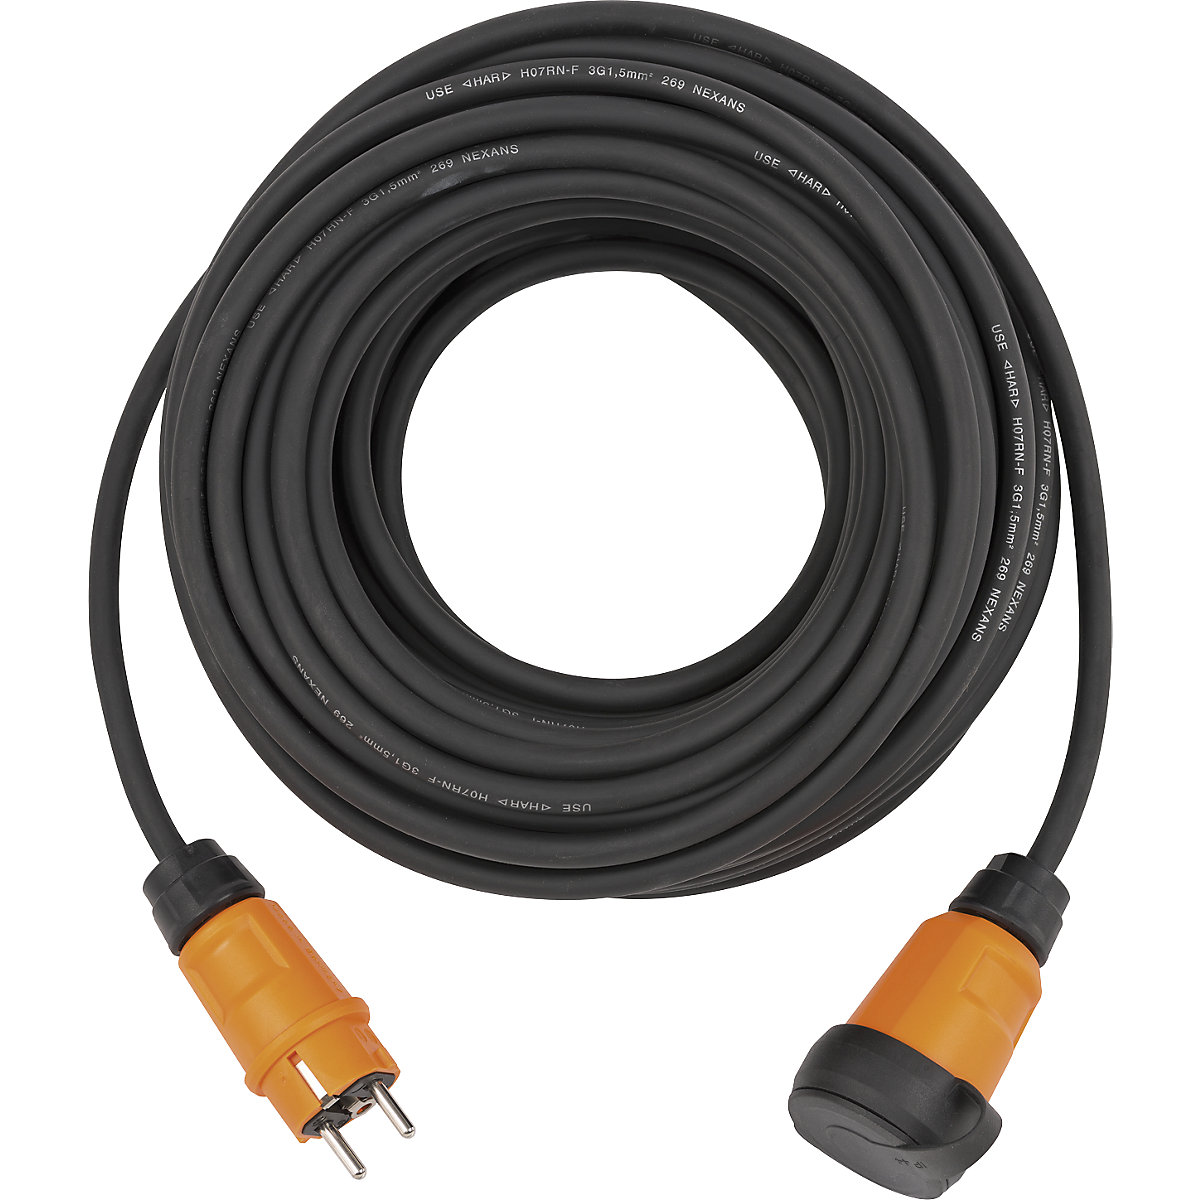 Cable alargador para exteriores professionalLINE IP44 – Brennenstuhl: negro